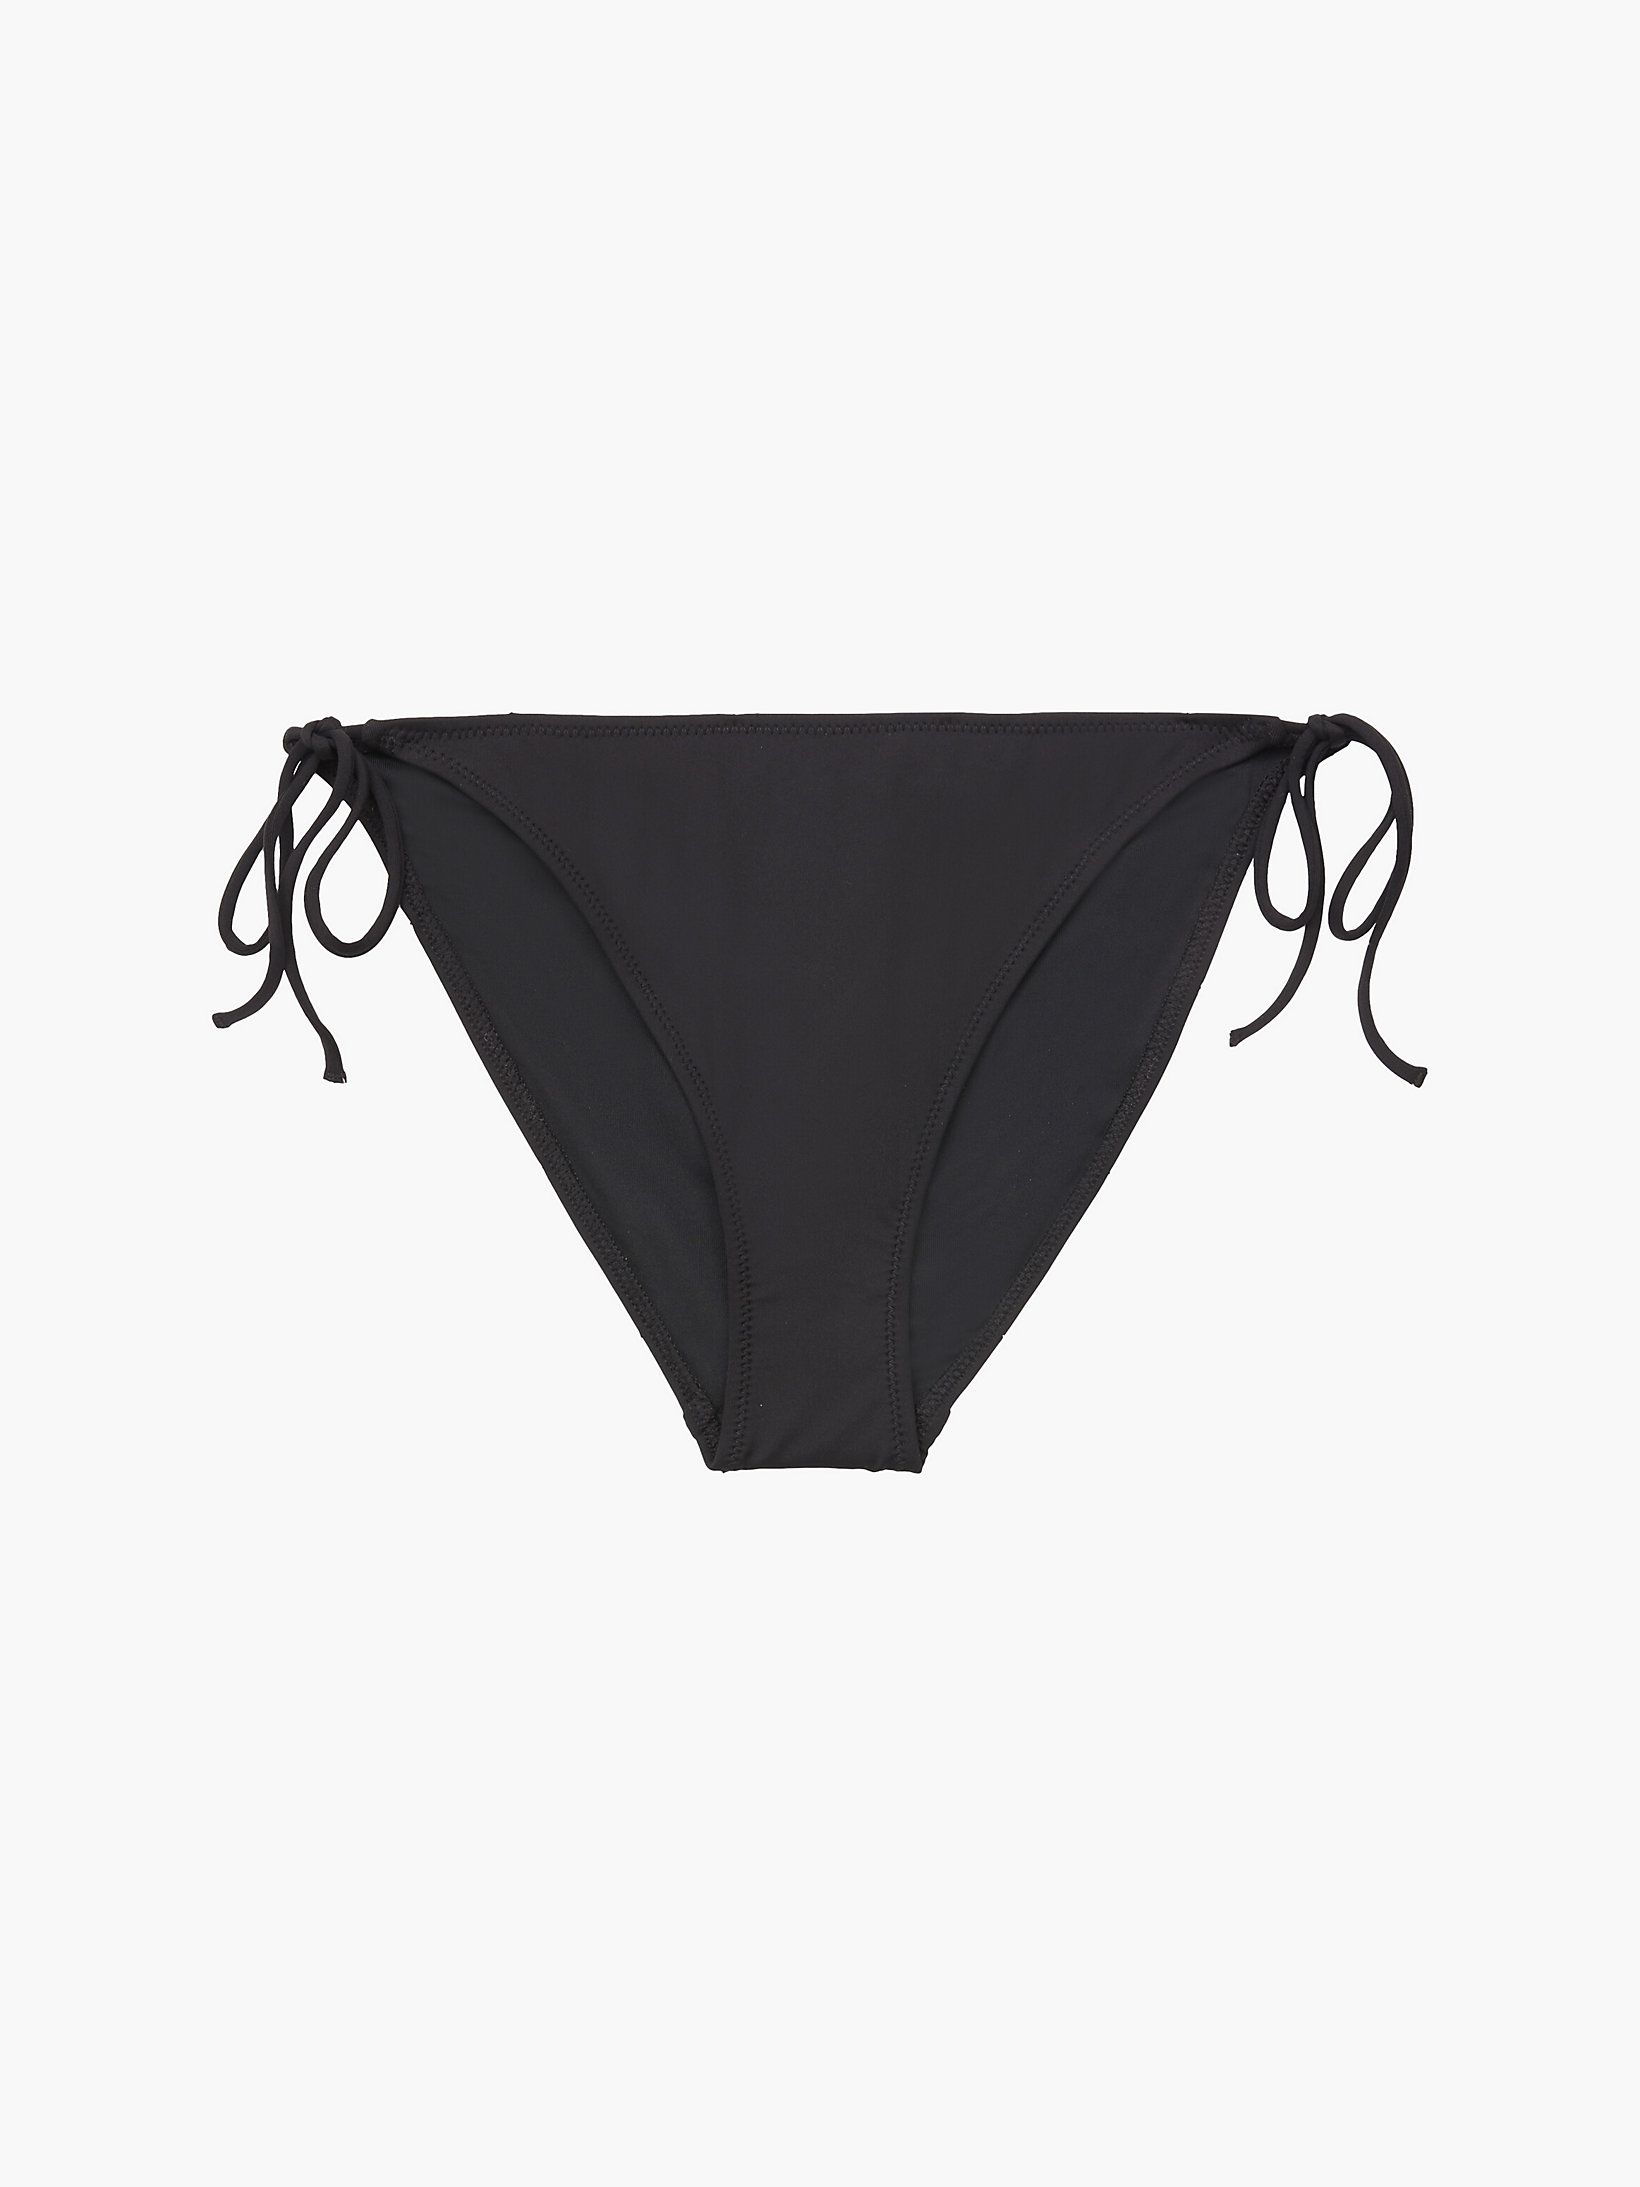 Pvh Black Tie Side Bikini Bottom - CK One undefined women Calvin Klein